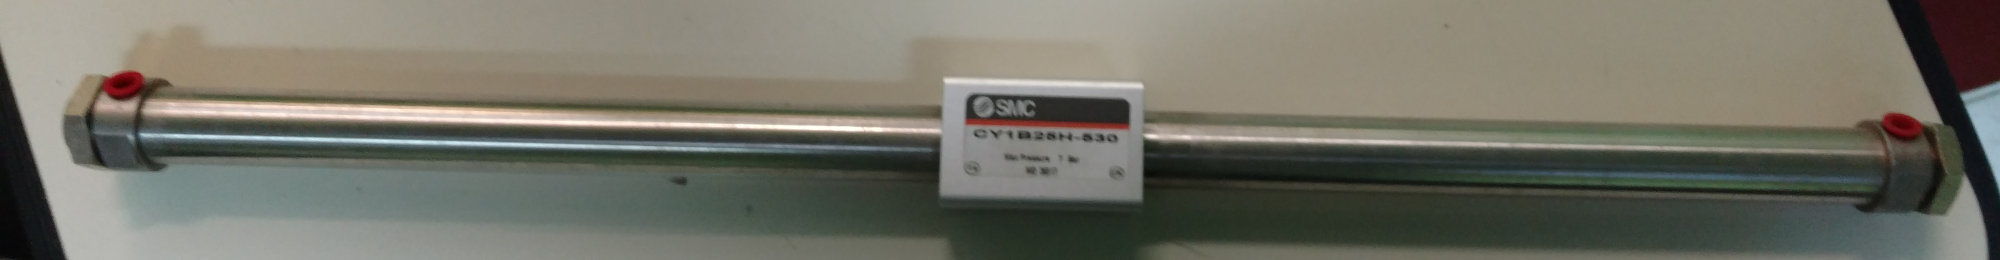 SMC INR-499-201 